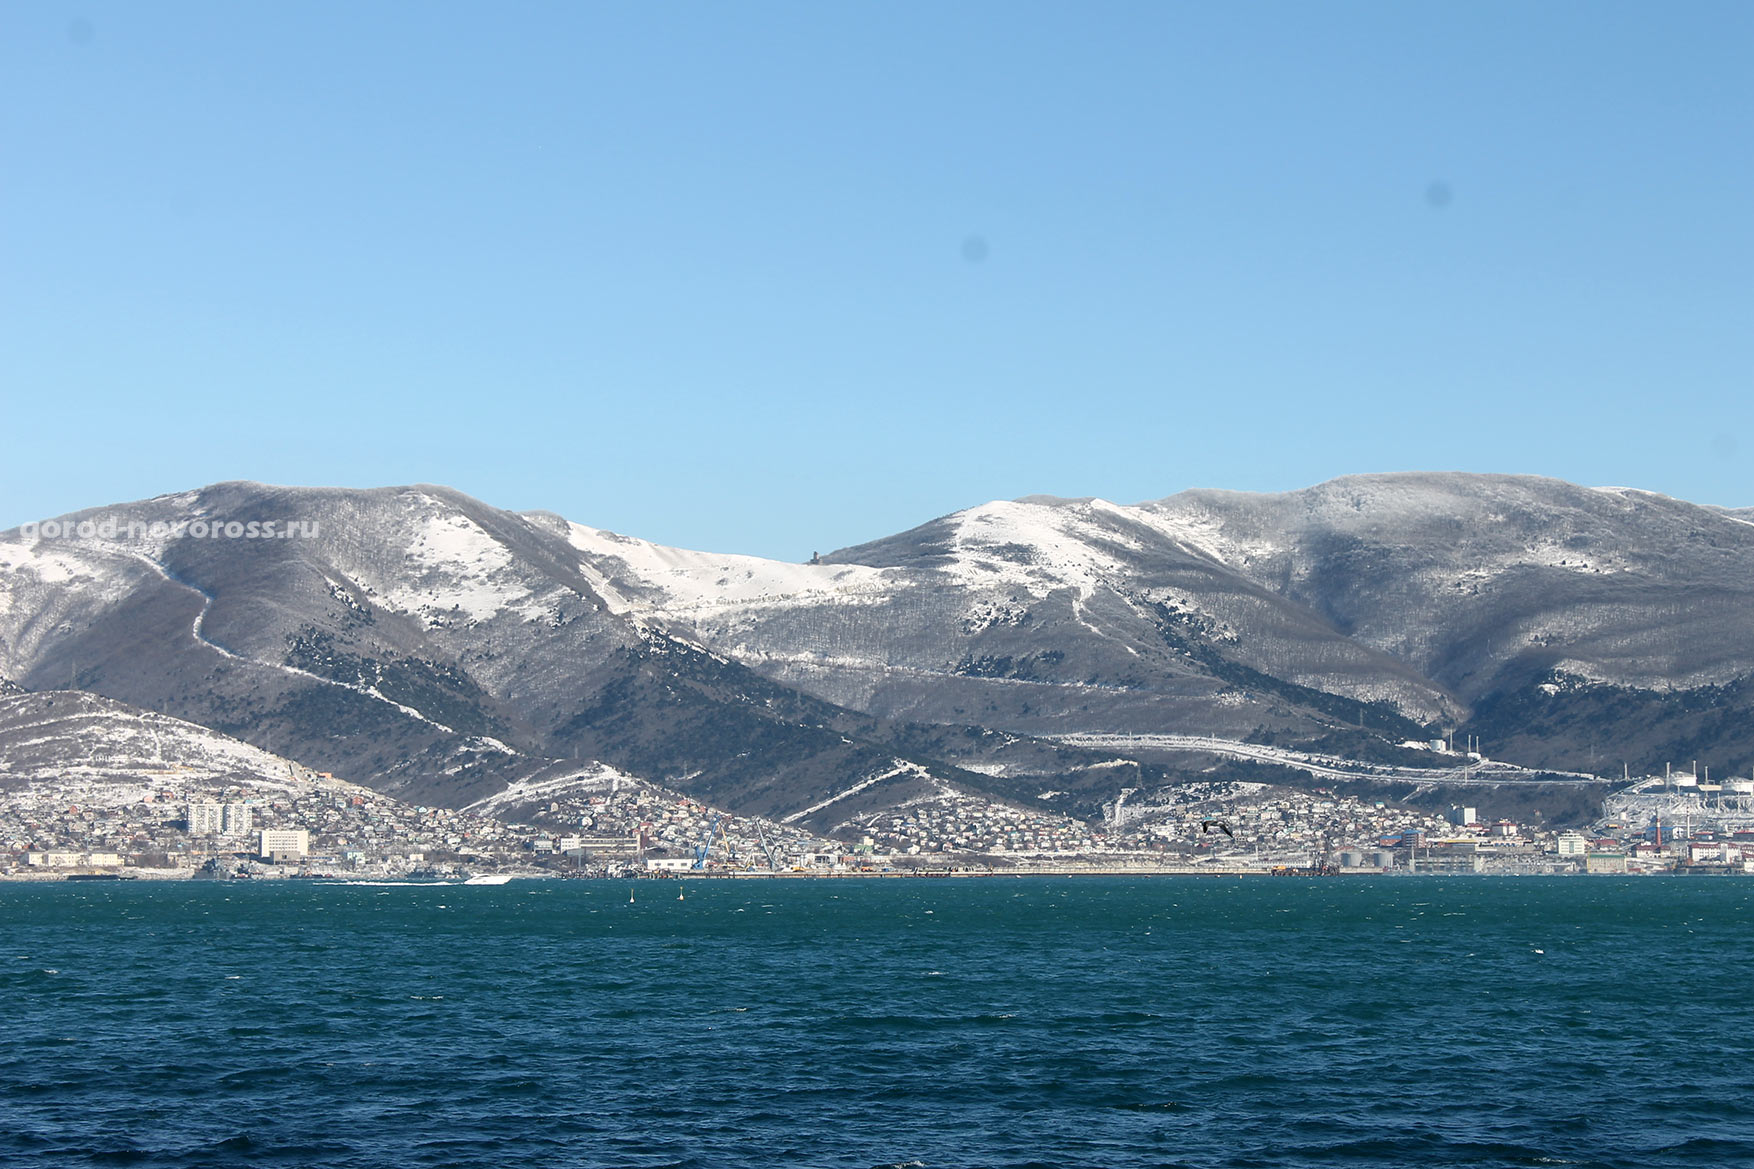 Вид на море и горы со снегом. Зима 2014. Новороссийск